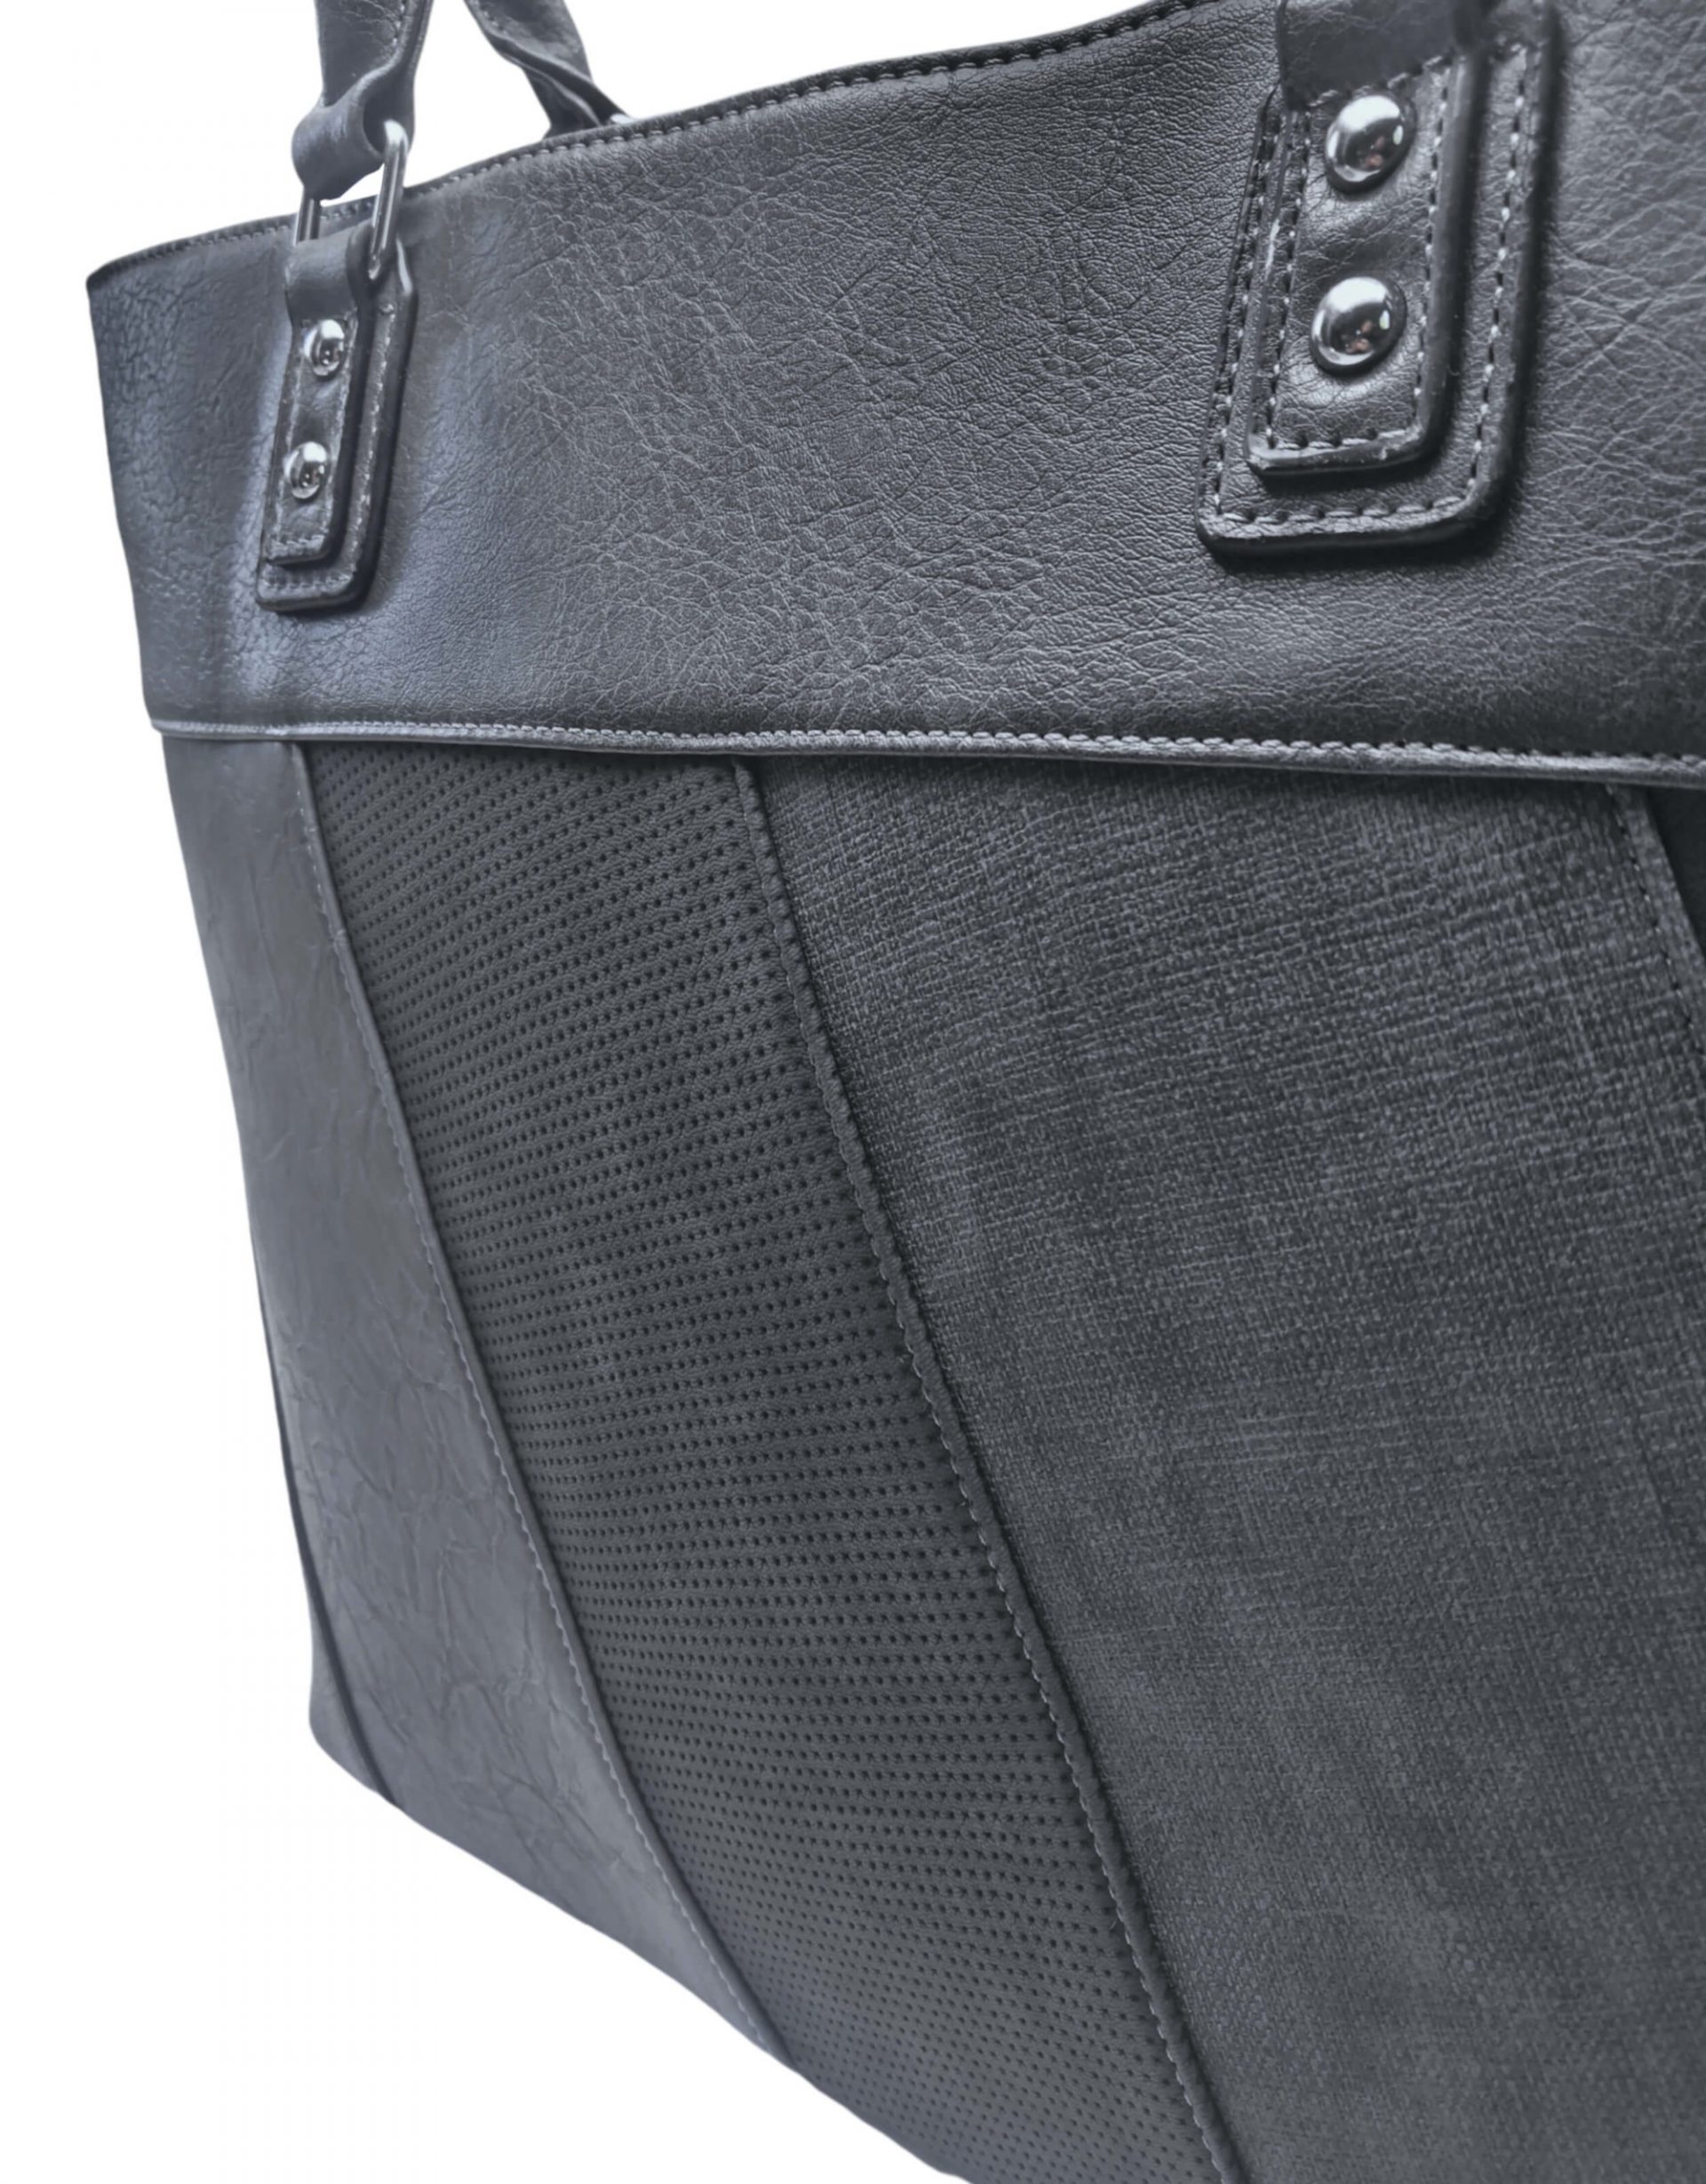 Dámská kabelka přes rameno s moderními vzory, Tapple H190027, tmavě šedá, detail kabelky